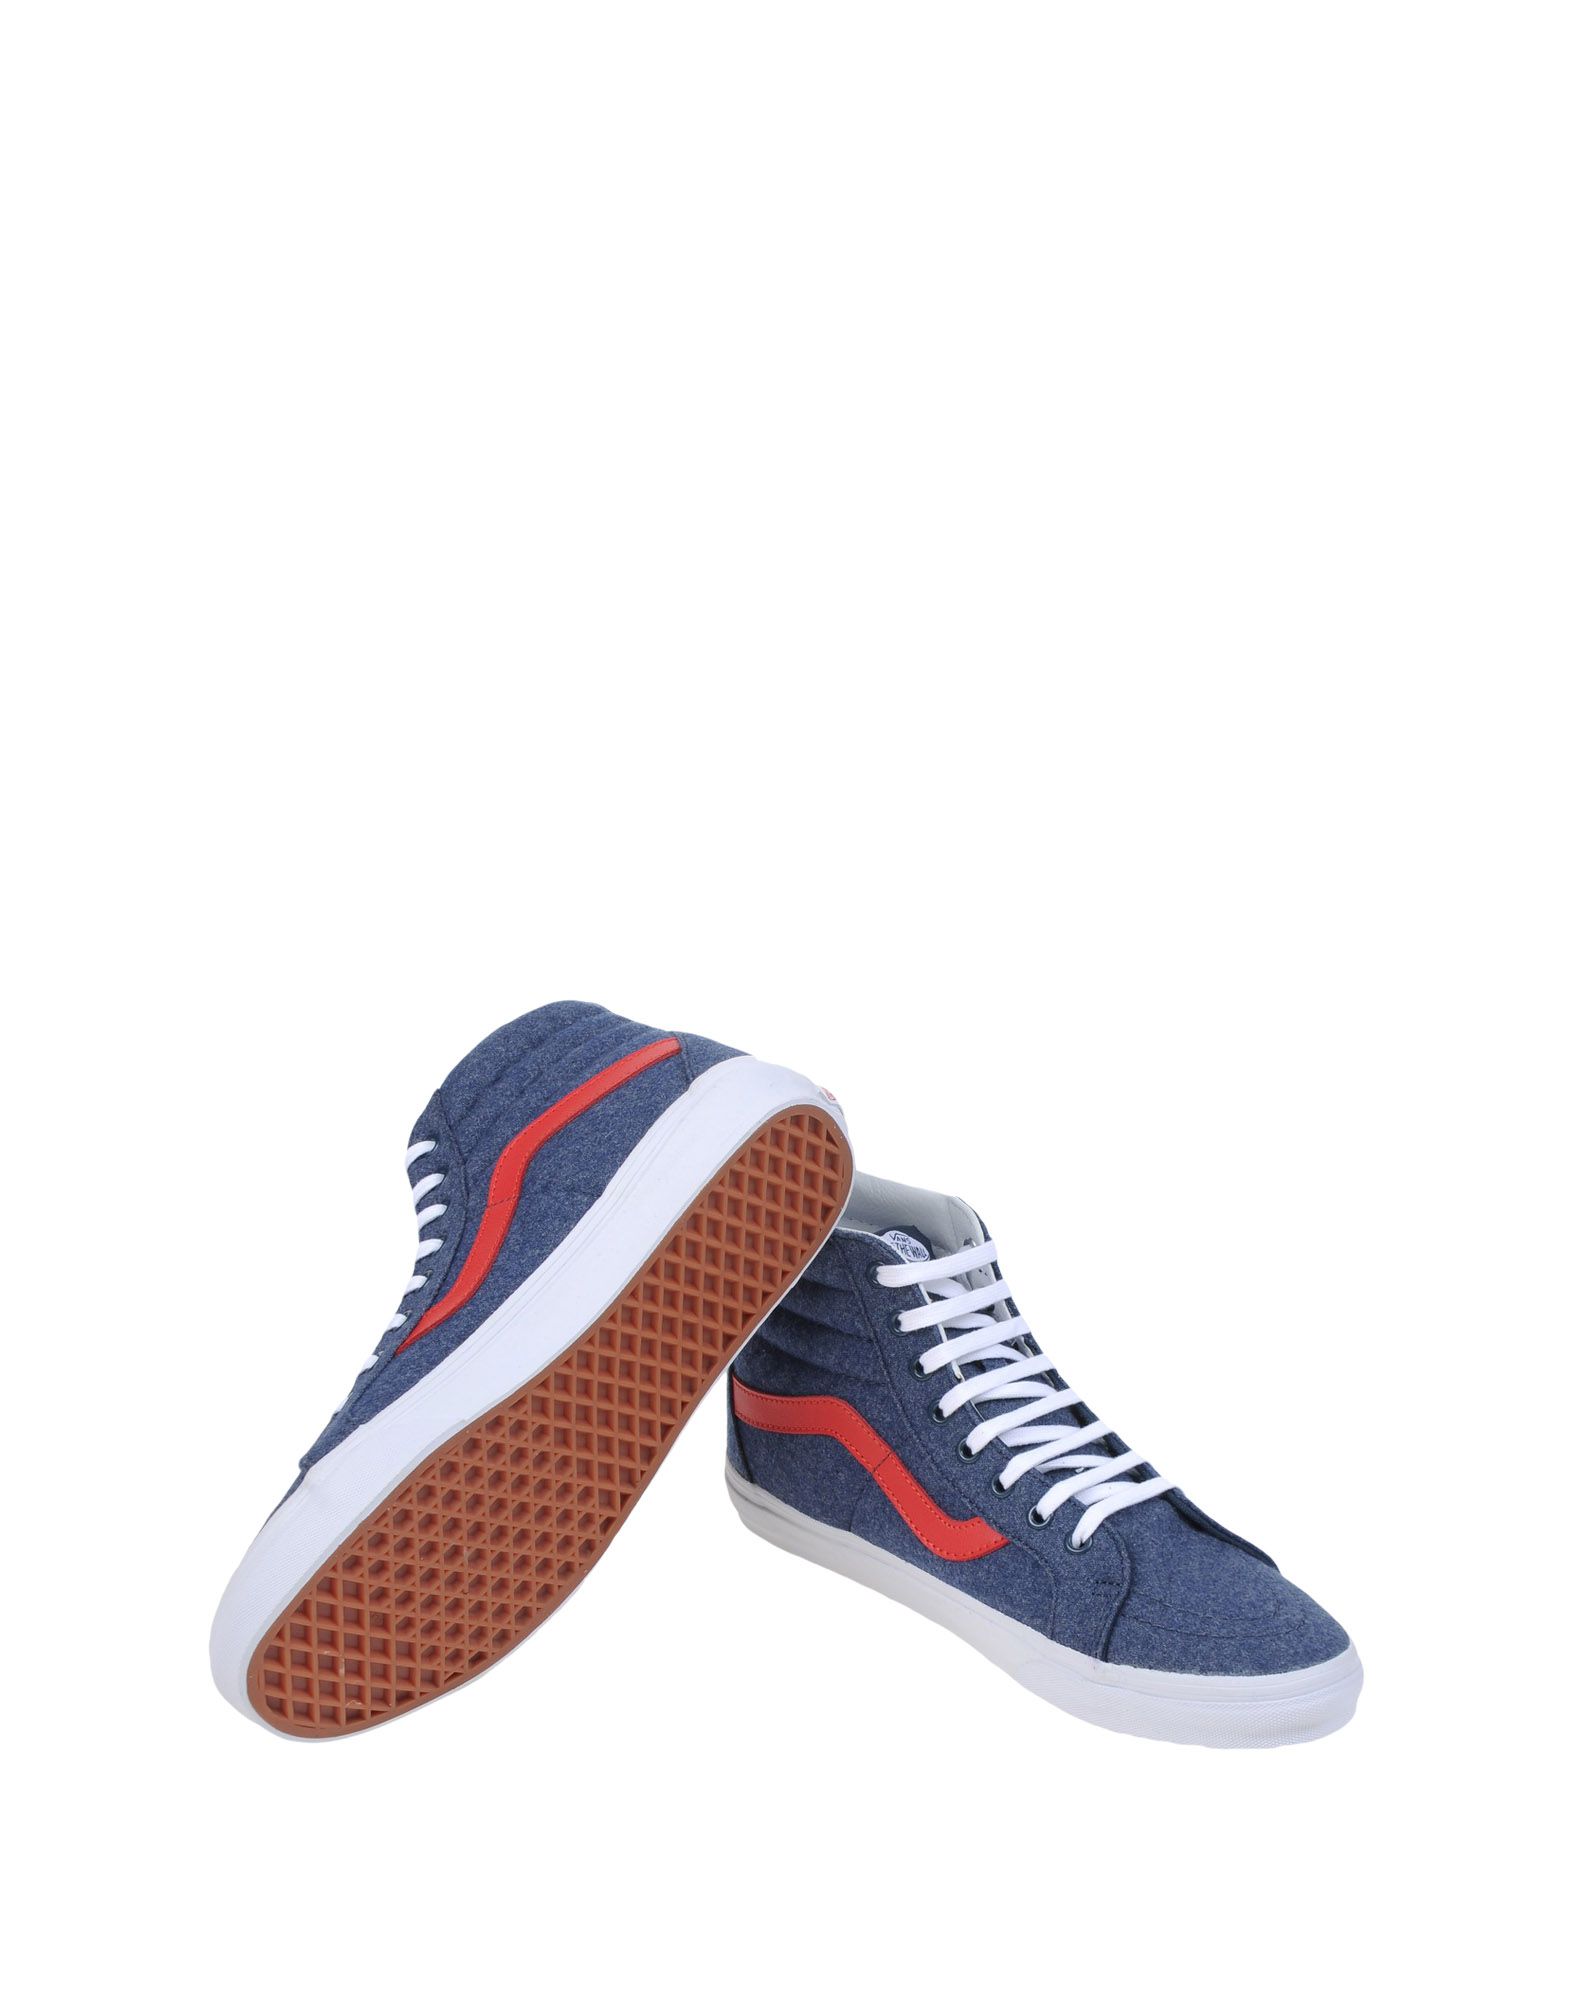 Vans Sk8-hi Reissue Sneakers Dark Blue Men Footwear,wearing - Nike Free - HD Wallpaper 